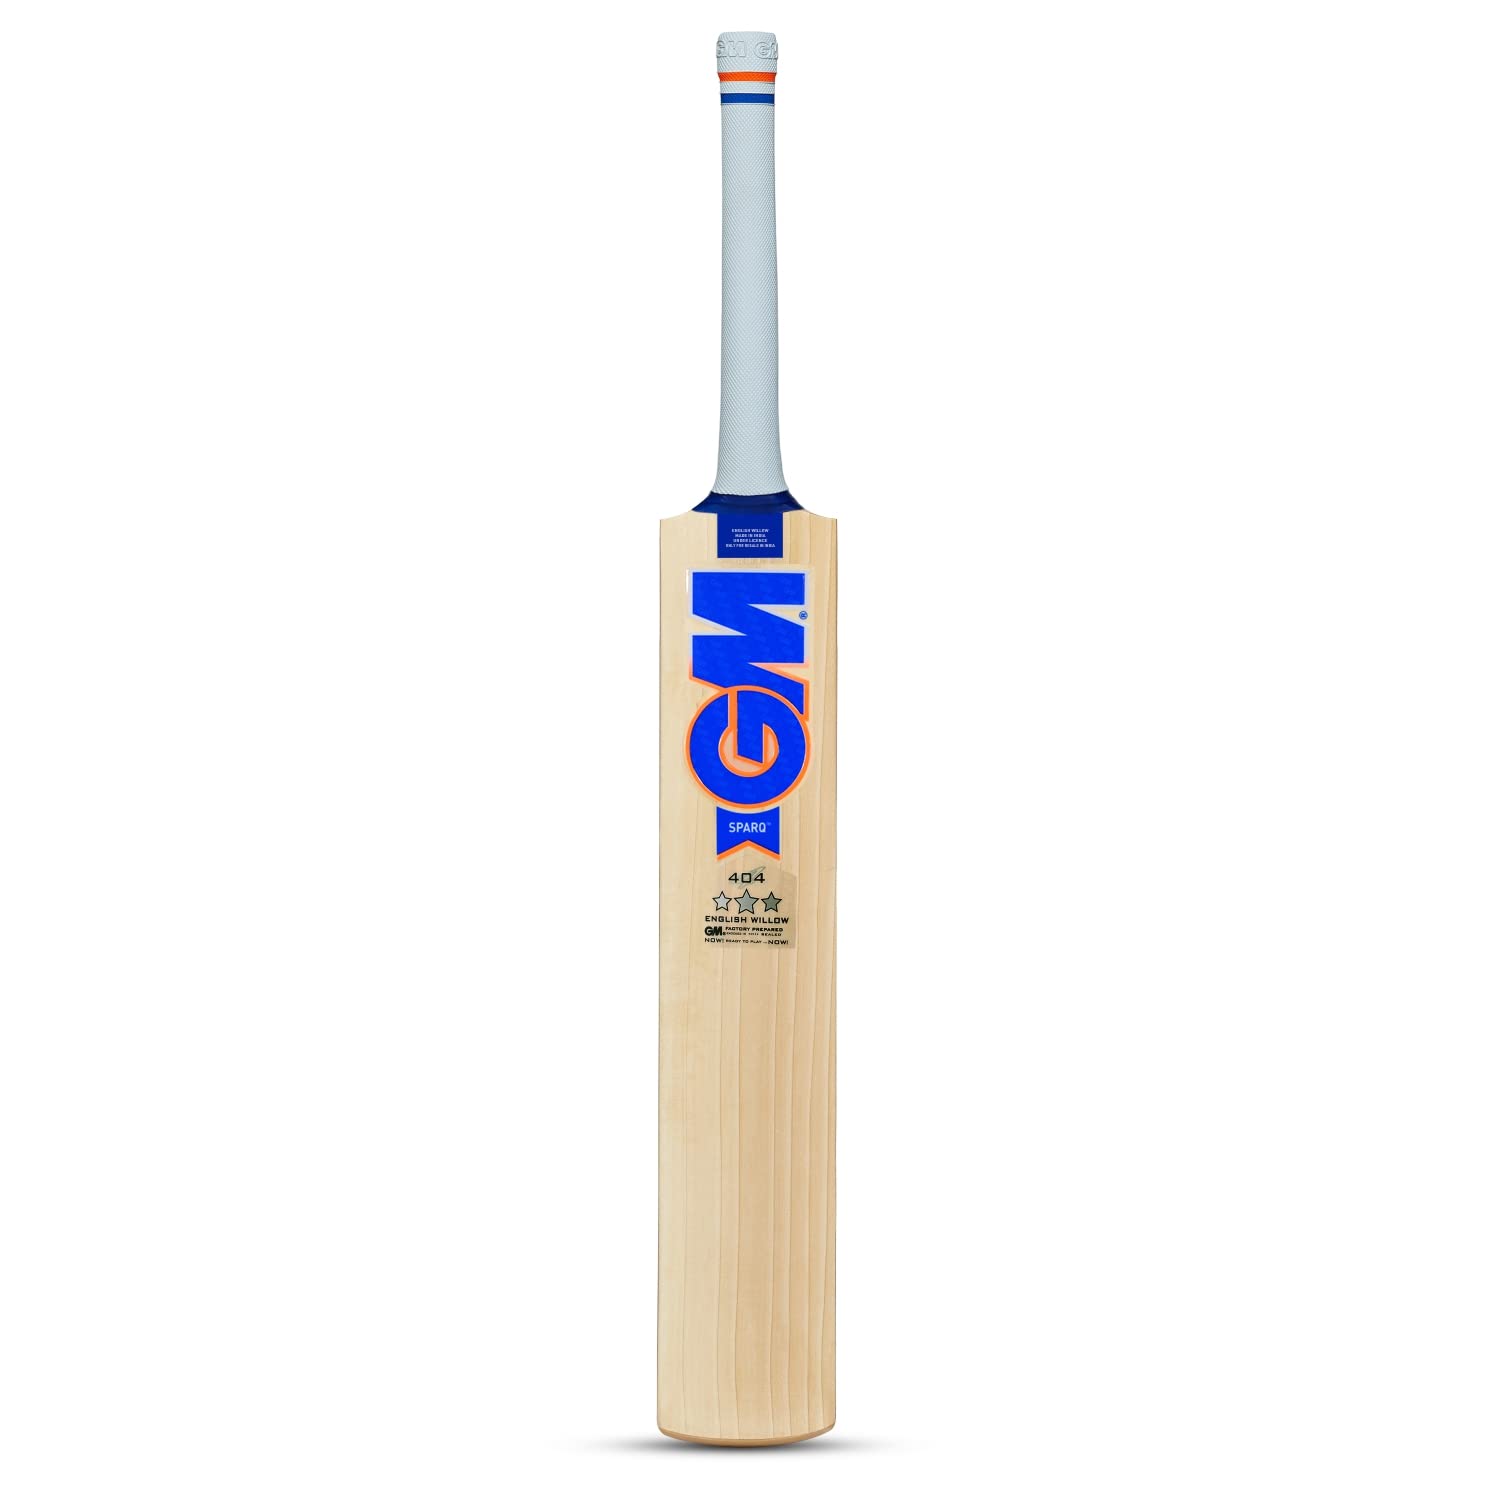 GM Sparq 404 English Willow Cricket Bat - Best Price online Prokicksports.com